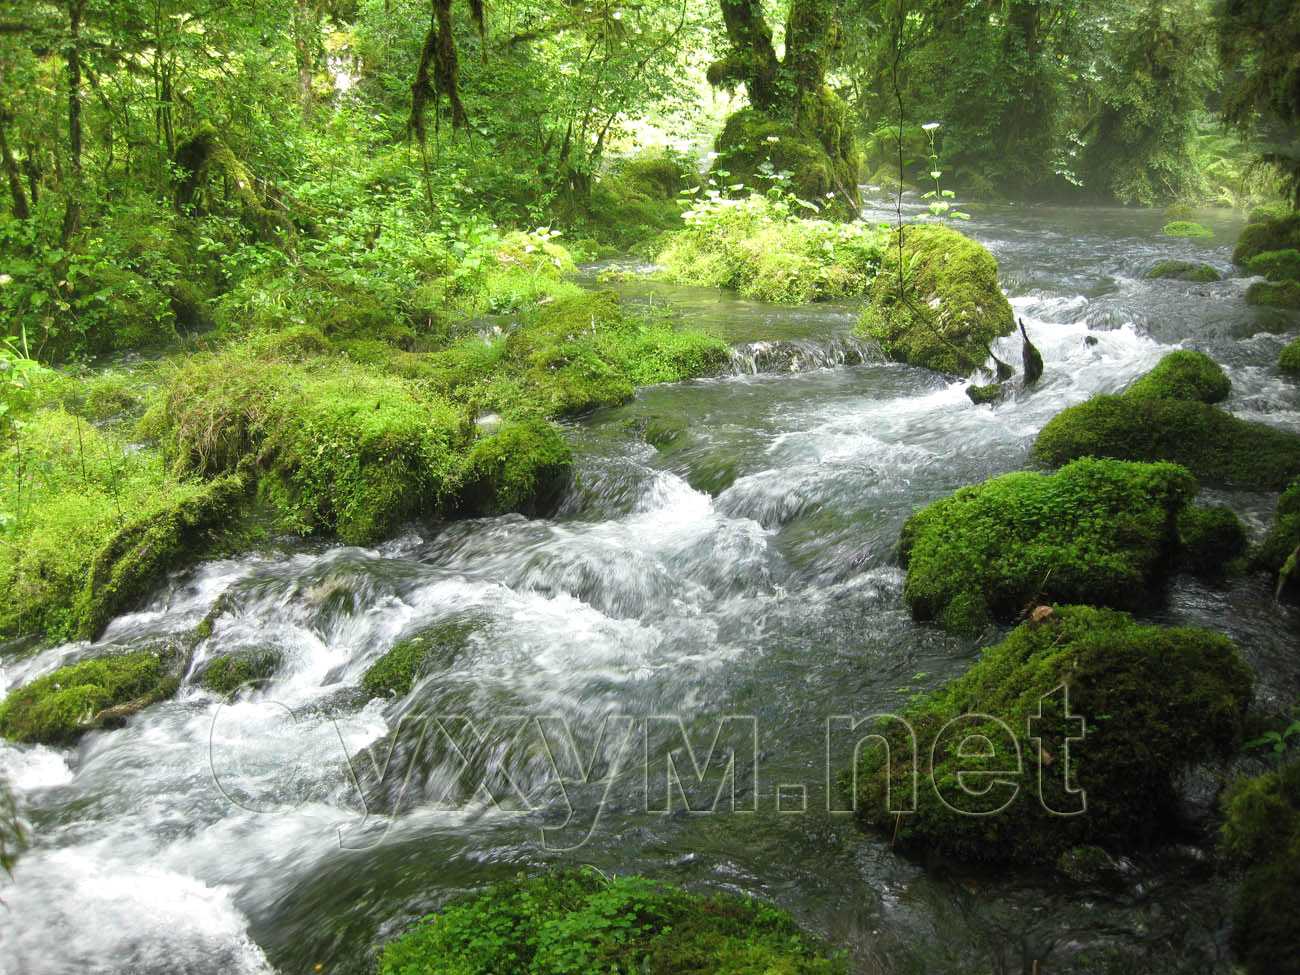 холодная речка бежит по мягким зелёным кочкам мха